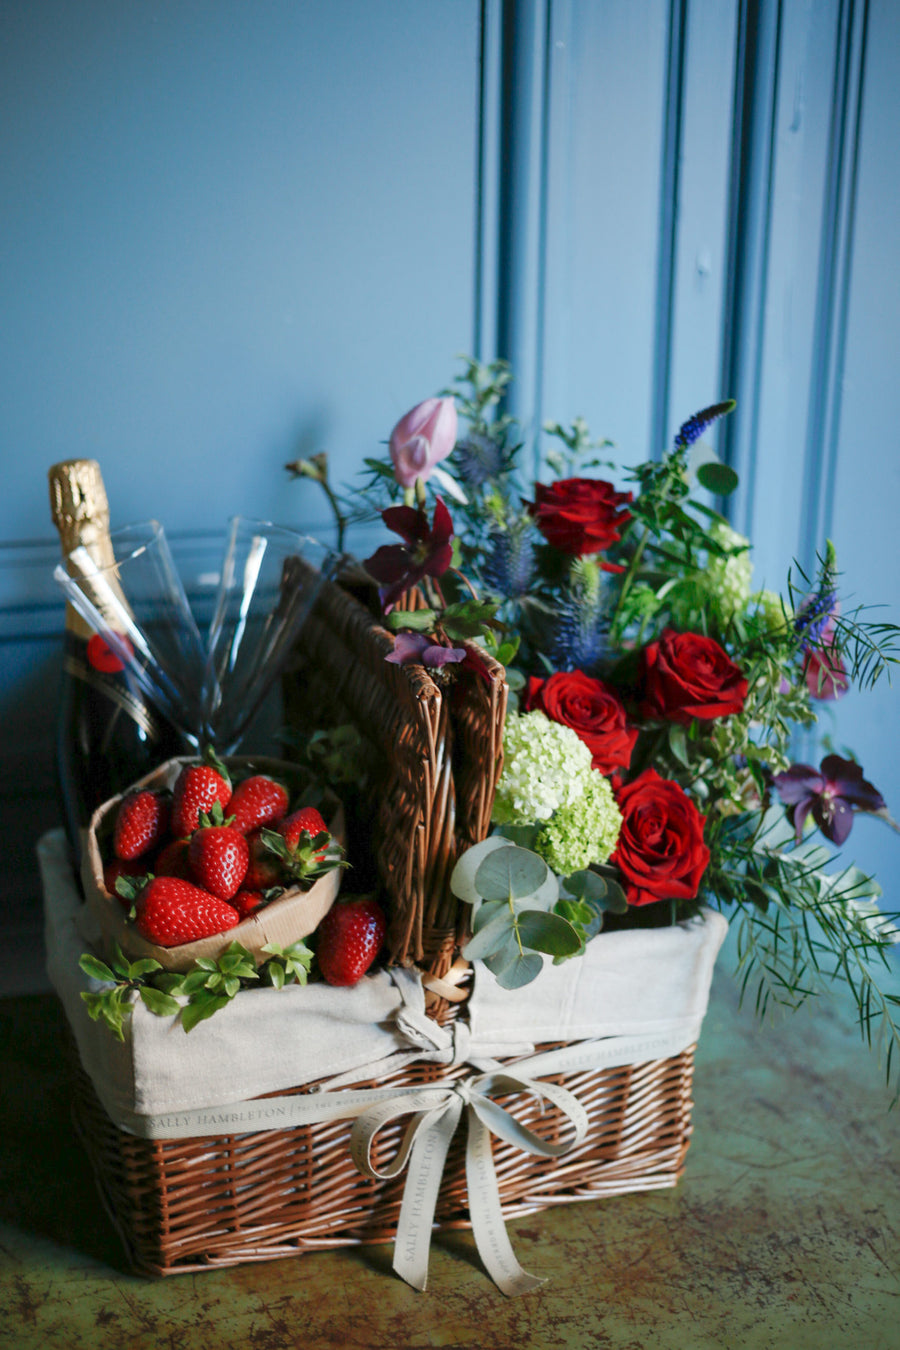 cesta-mimbre--con-flores-champagne-fresas-sally-hambleton-02